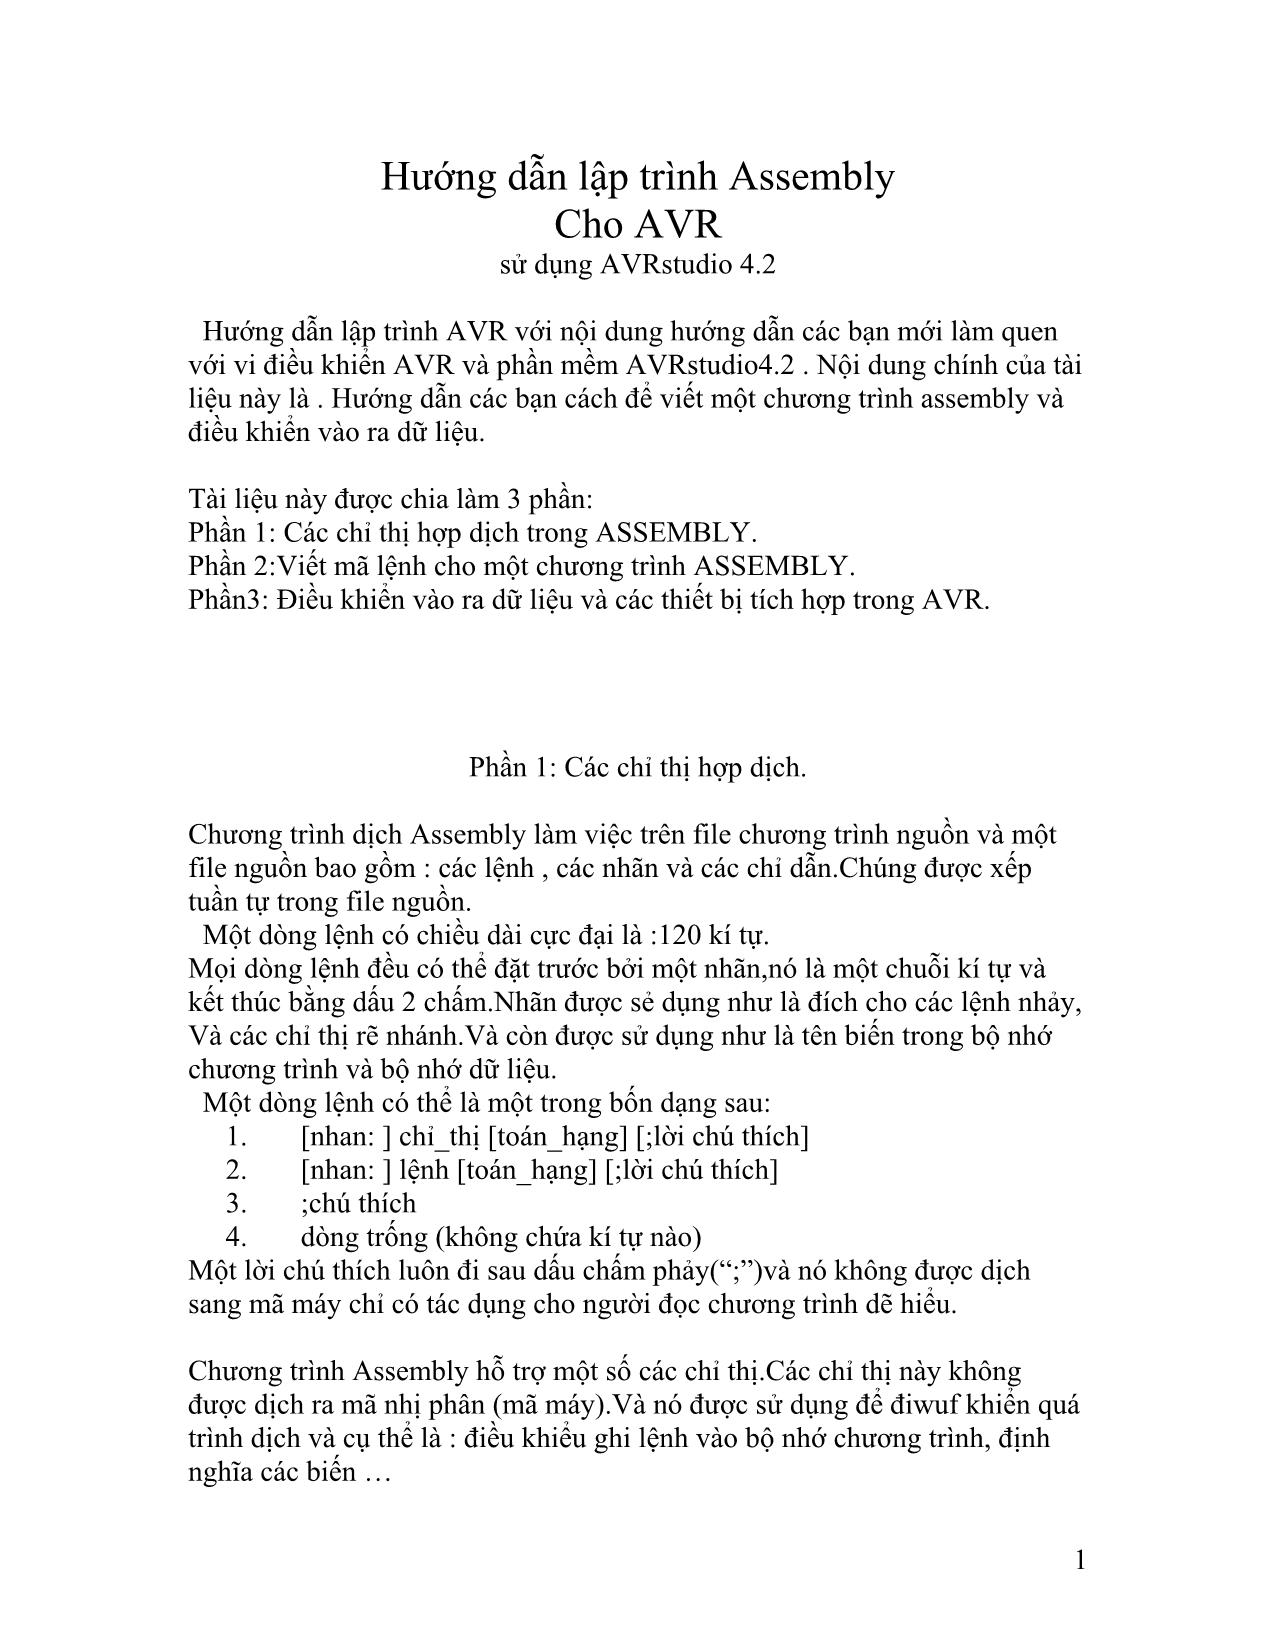 Hướng dẫn lập trình Assembly Cho AVR trang 1